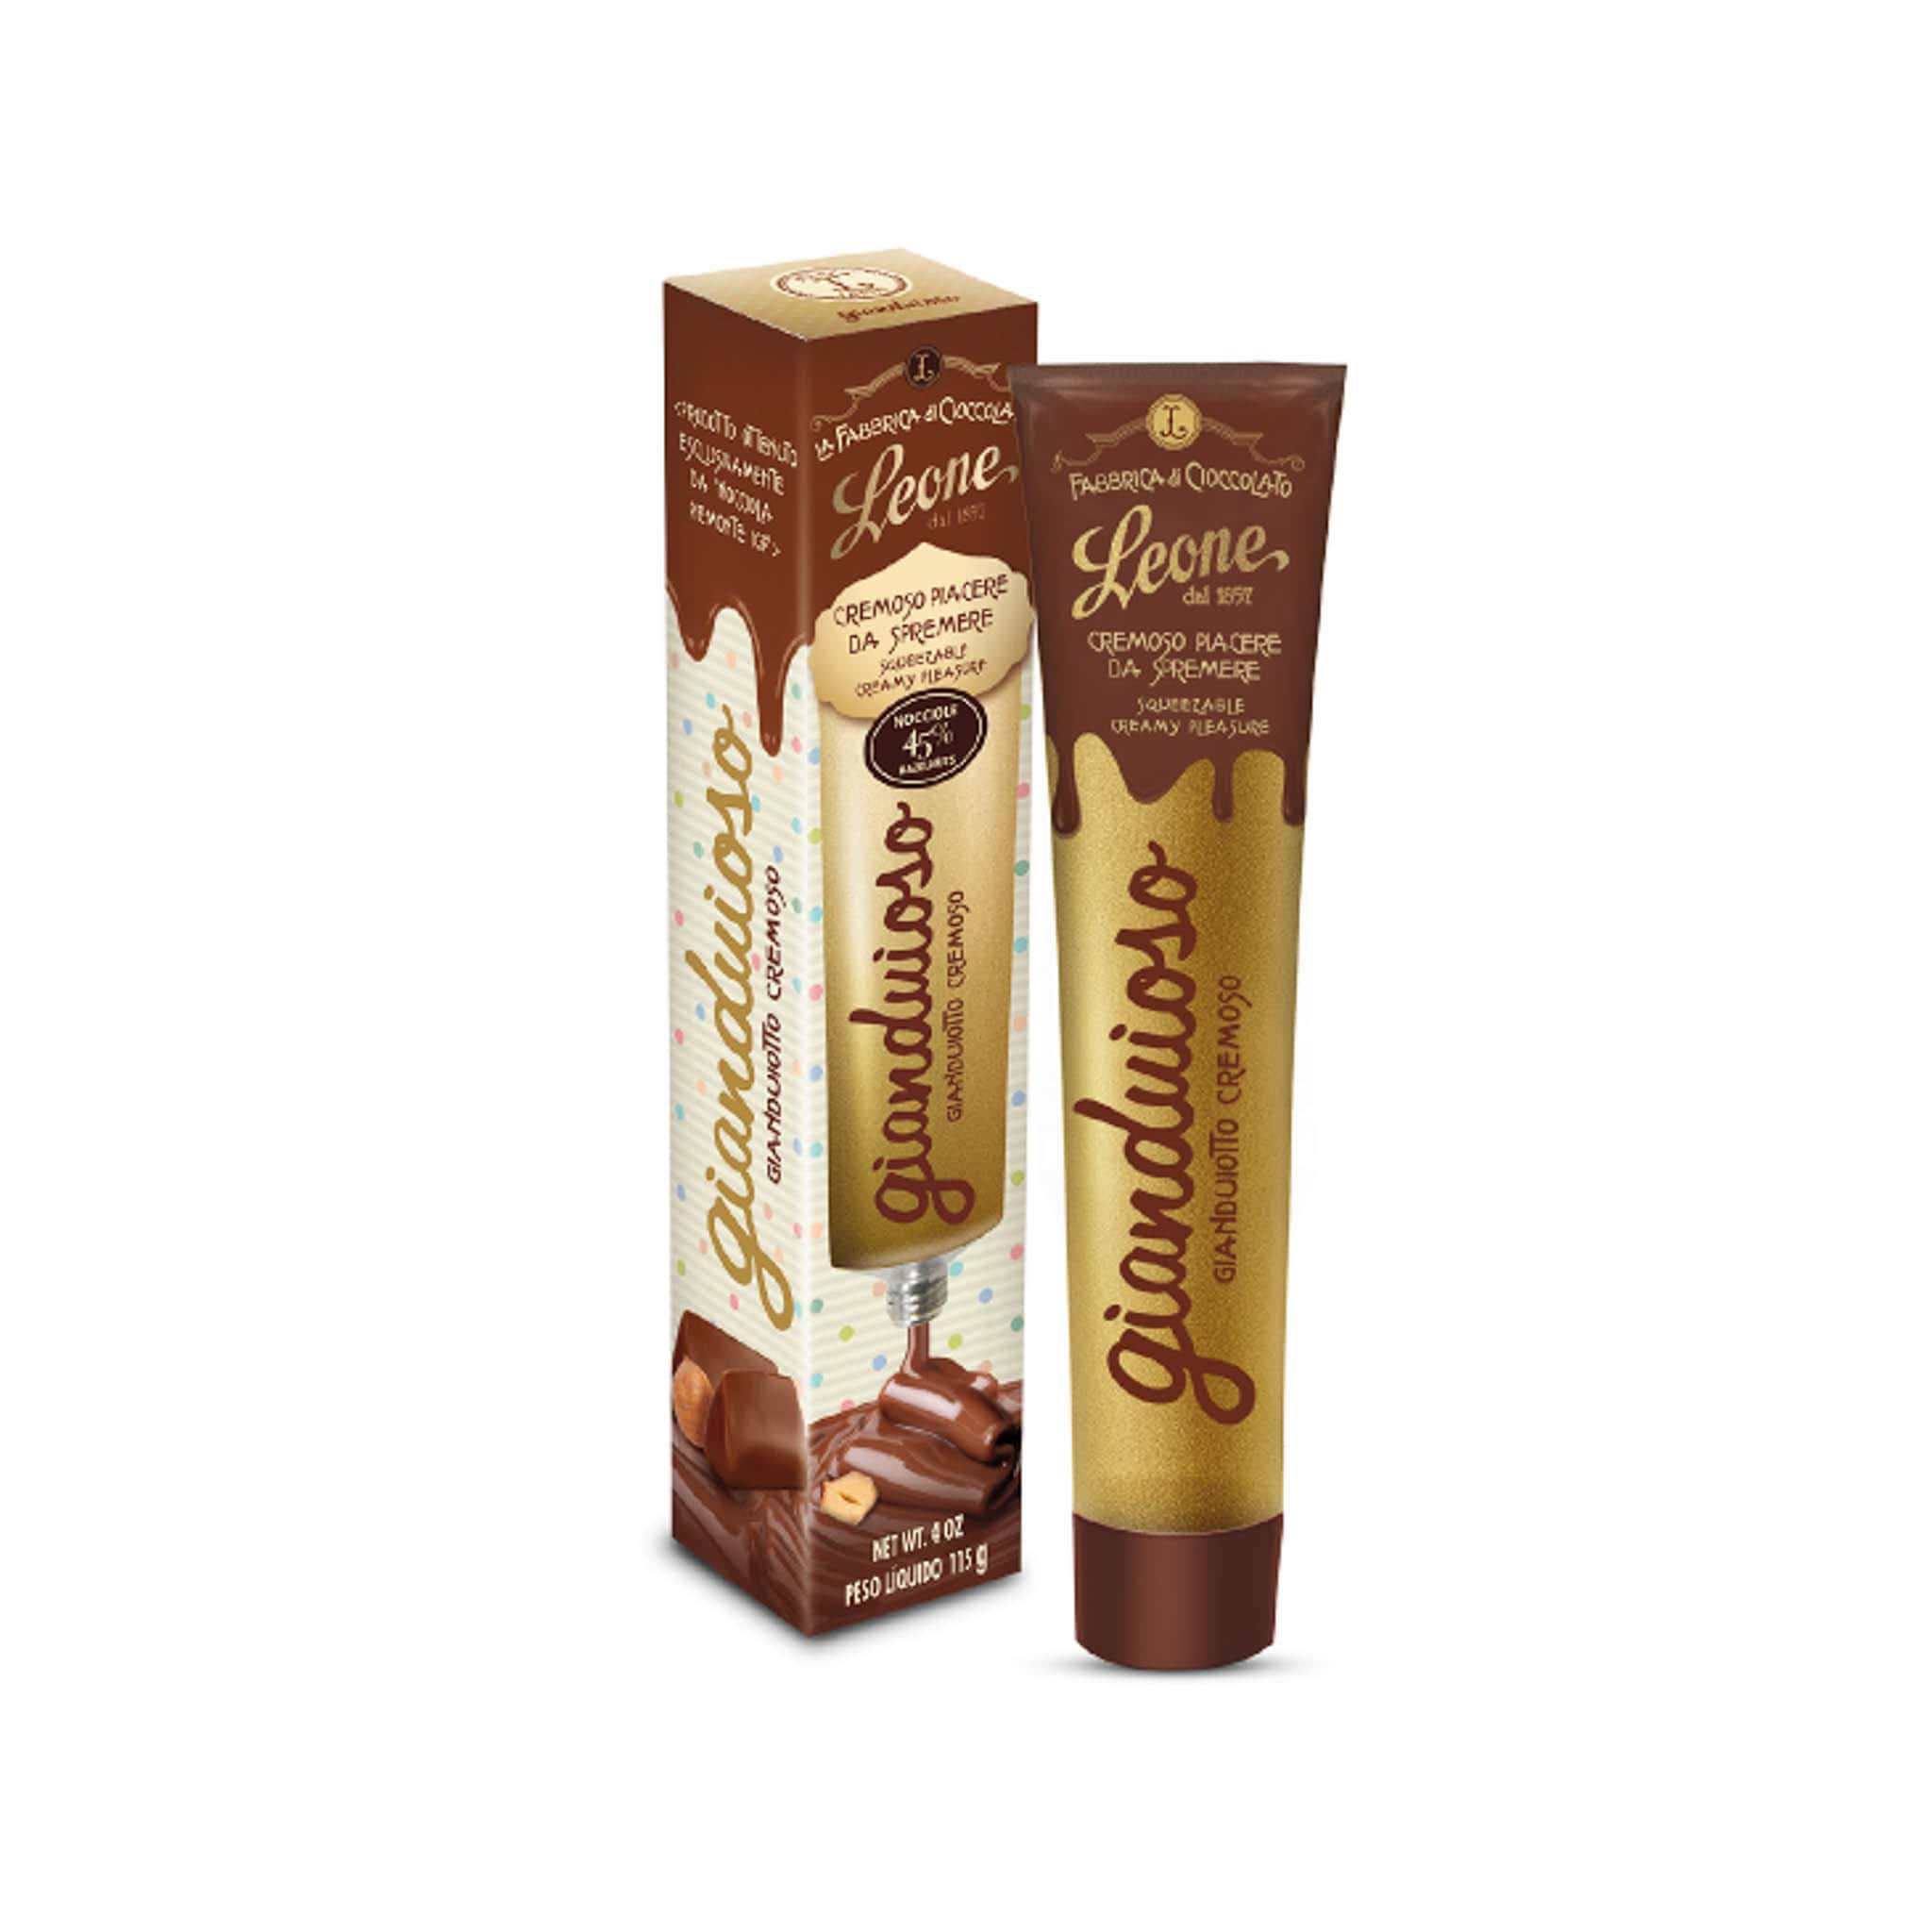 Leone Gianduja Hazelnut Chocolate Spread Tube 115g